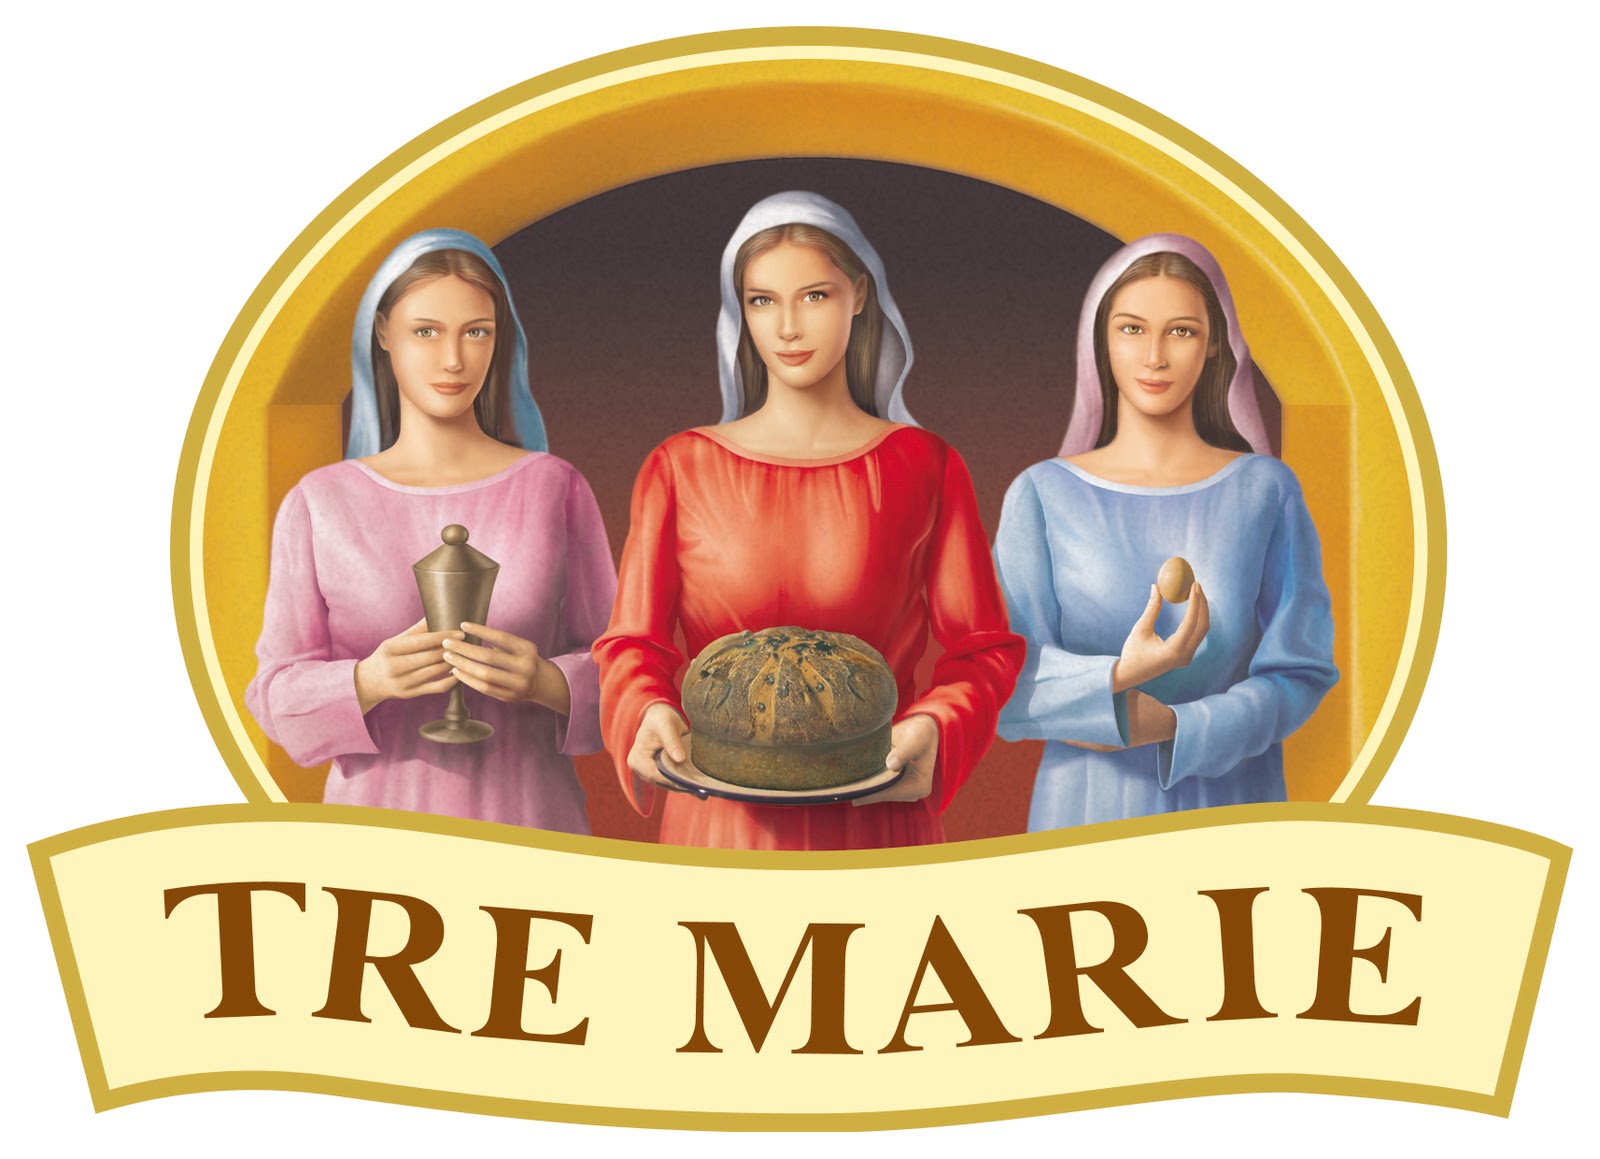 Tre Marie